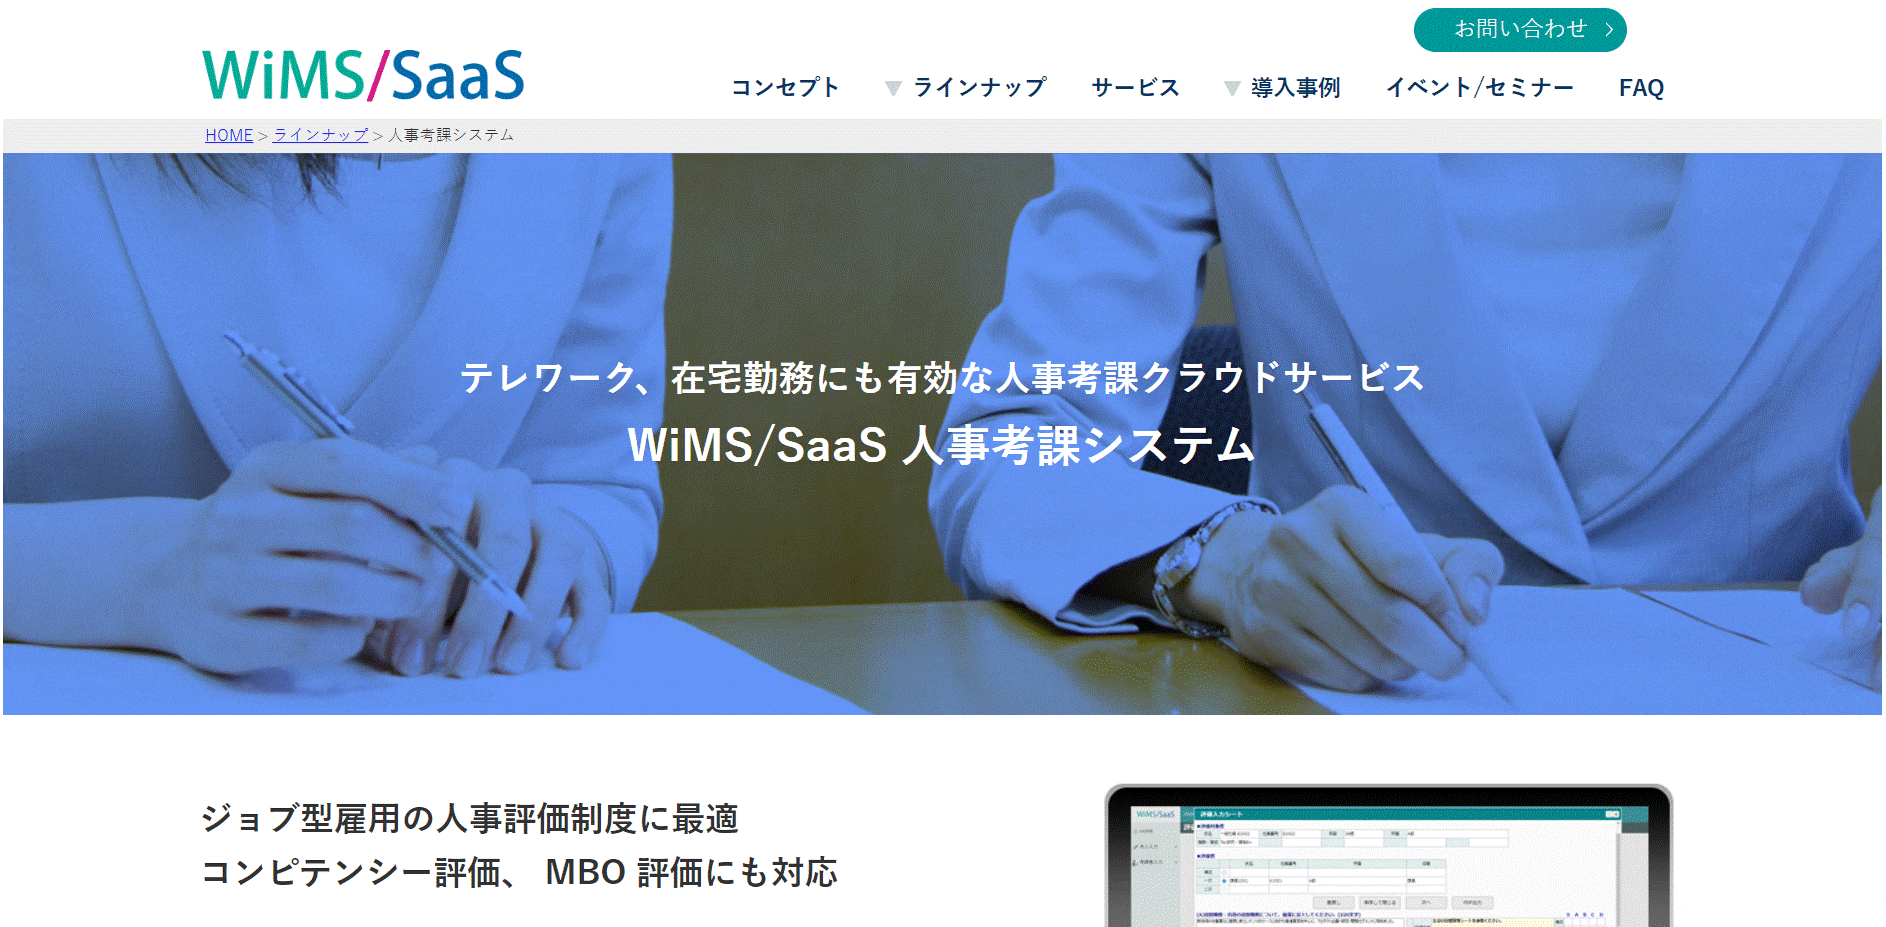 WiMS/SaaS人事考課システム（株式会社ソリューション・アンド・テクノロジー） 